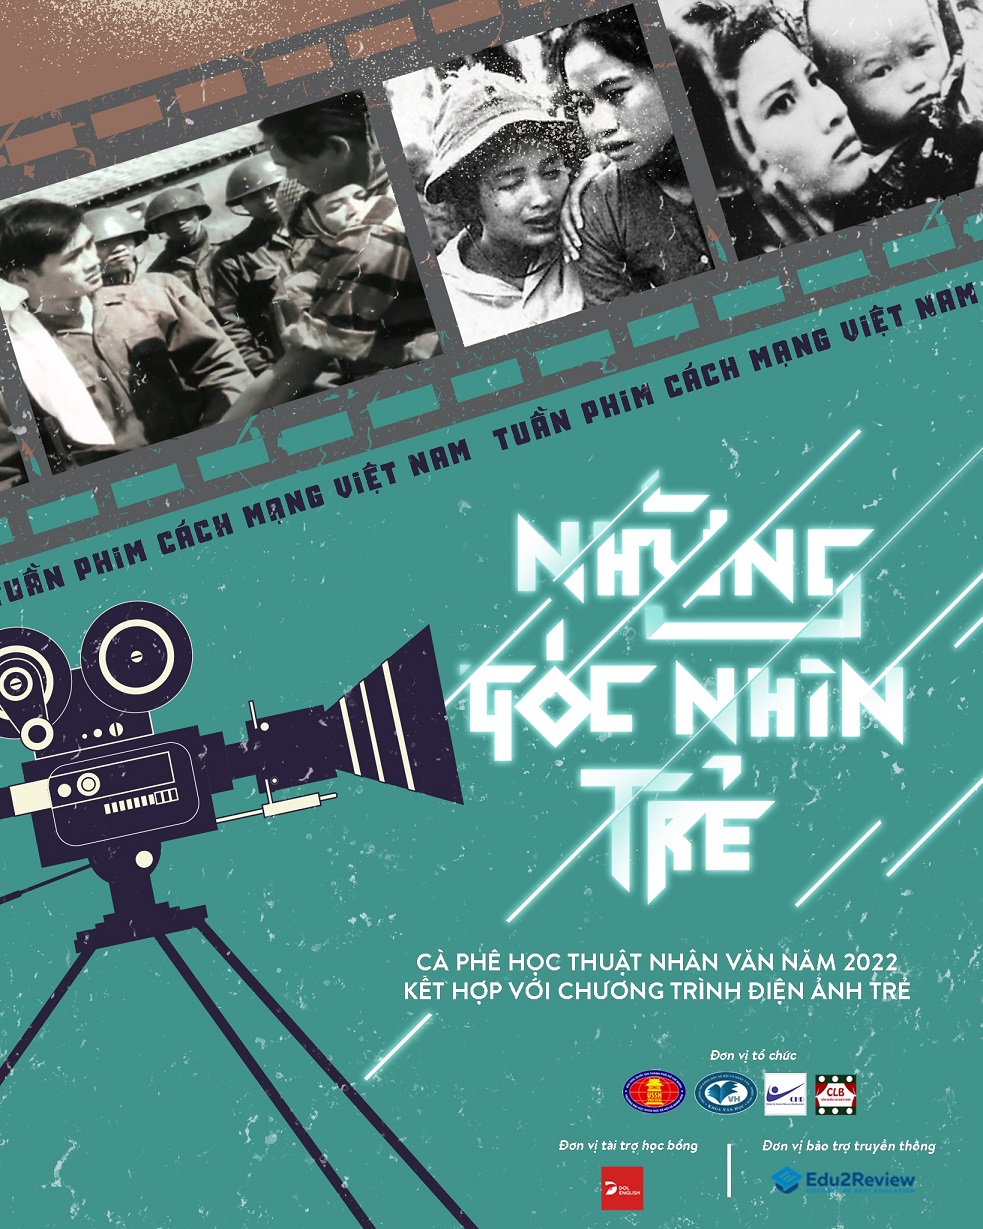 Phim Cách mạng Việt Nam là một trong những bộ phim mang tính lịch sử cao, giúp chúng ta hiểu rõ hơn về cuộc đấu tranh đầy khốc liệt của dân tộc trong chiến tranh giành độc lập. Đừng bỏ lỡ cơ hội để khám phá lịch sử Việt Nam thông qua những bộ phim cổ trang đầy cảm động này.